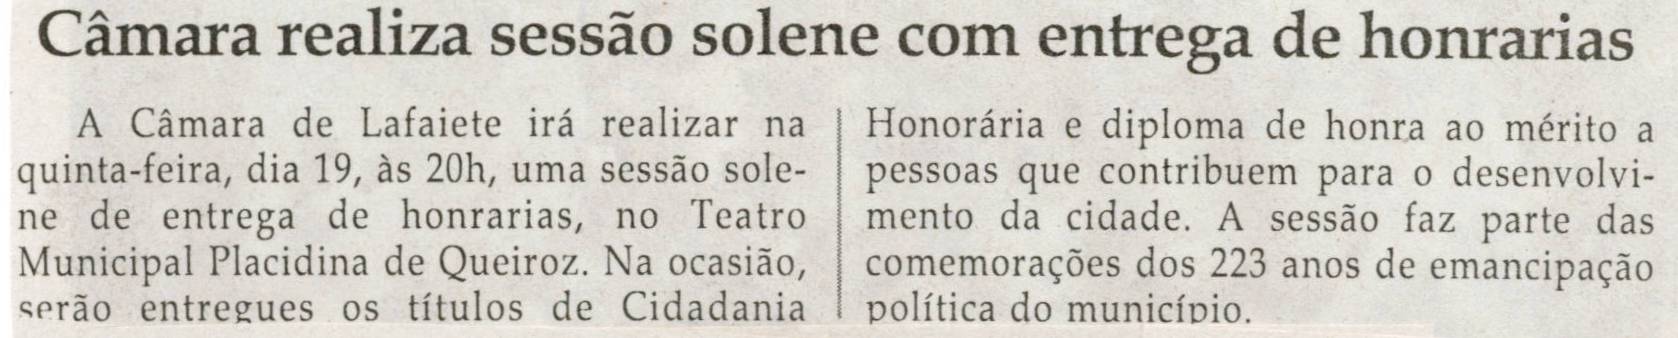 Câmara realiza sessão solene com entrega de honrarias. Jornal Correio da Cidade, Conselheiro Lafaiete, 14 set. 2013, p. D3.